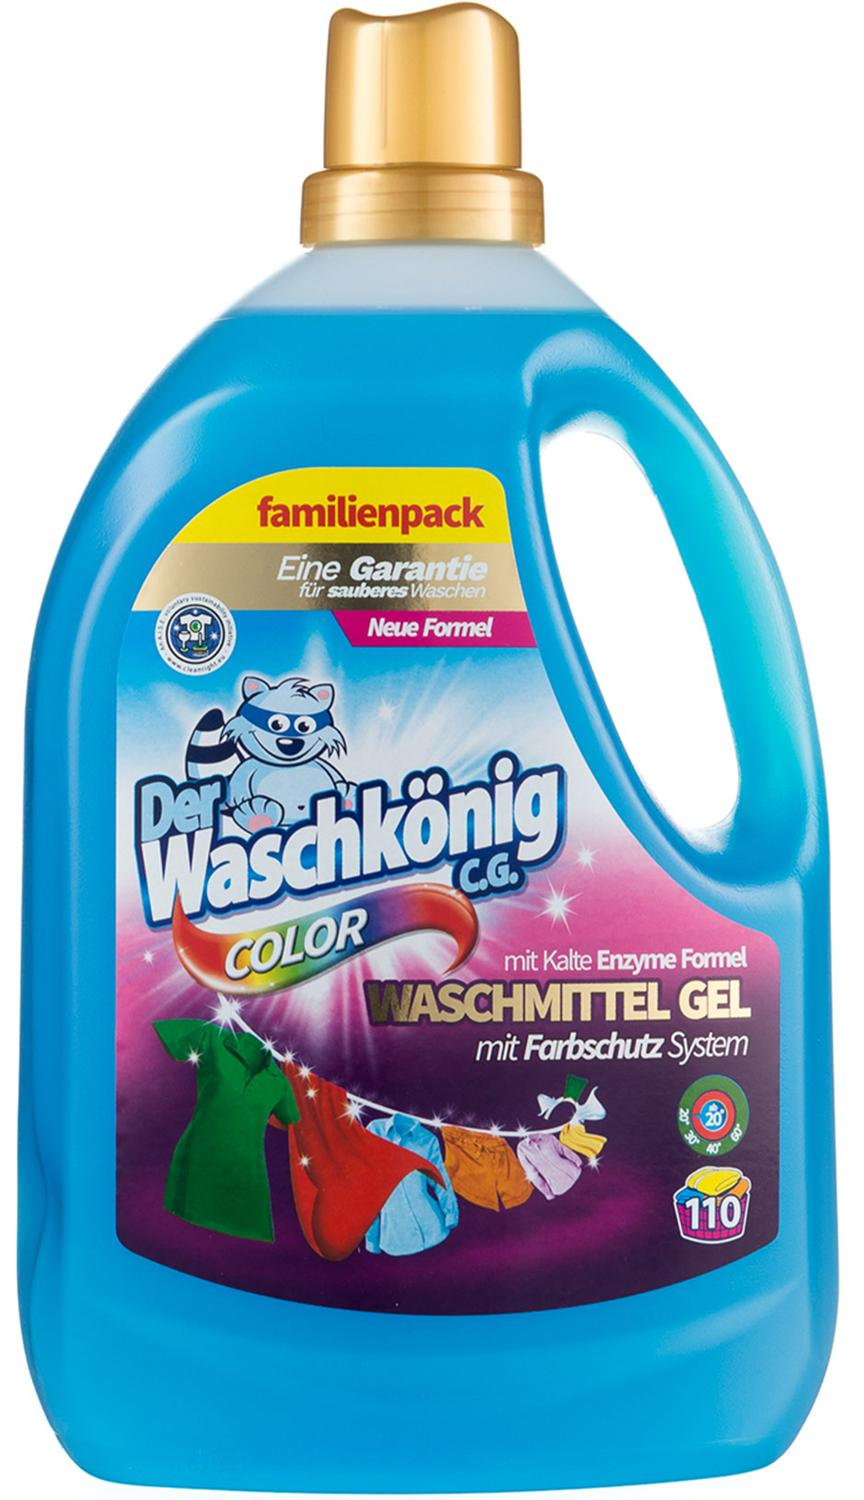 Der Waschkonig C.G. Waschmitel Gel Color Гель для стирки цветных тканей 3,305 л на 110 стирок